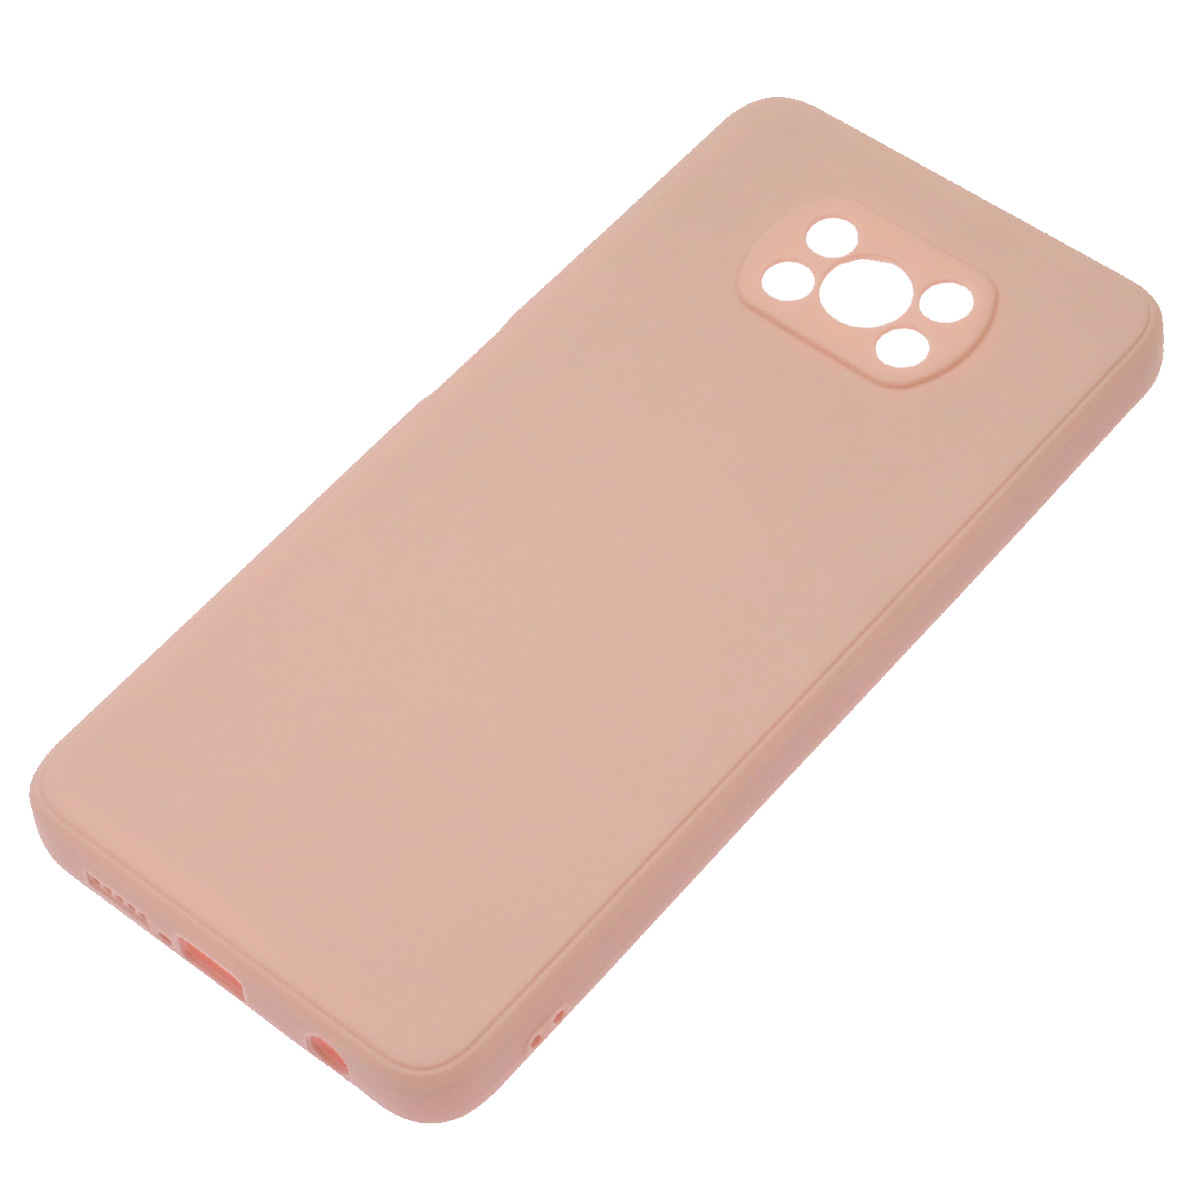 Чехол накладка для XIAOMI POCO X3, X3 Pro, силикон, бархат, цвет розовый песок